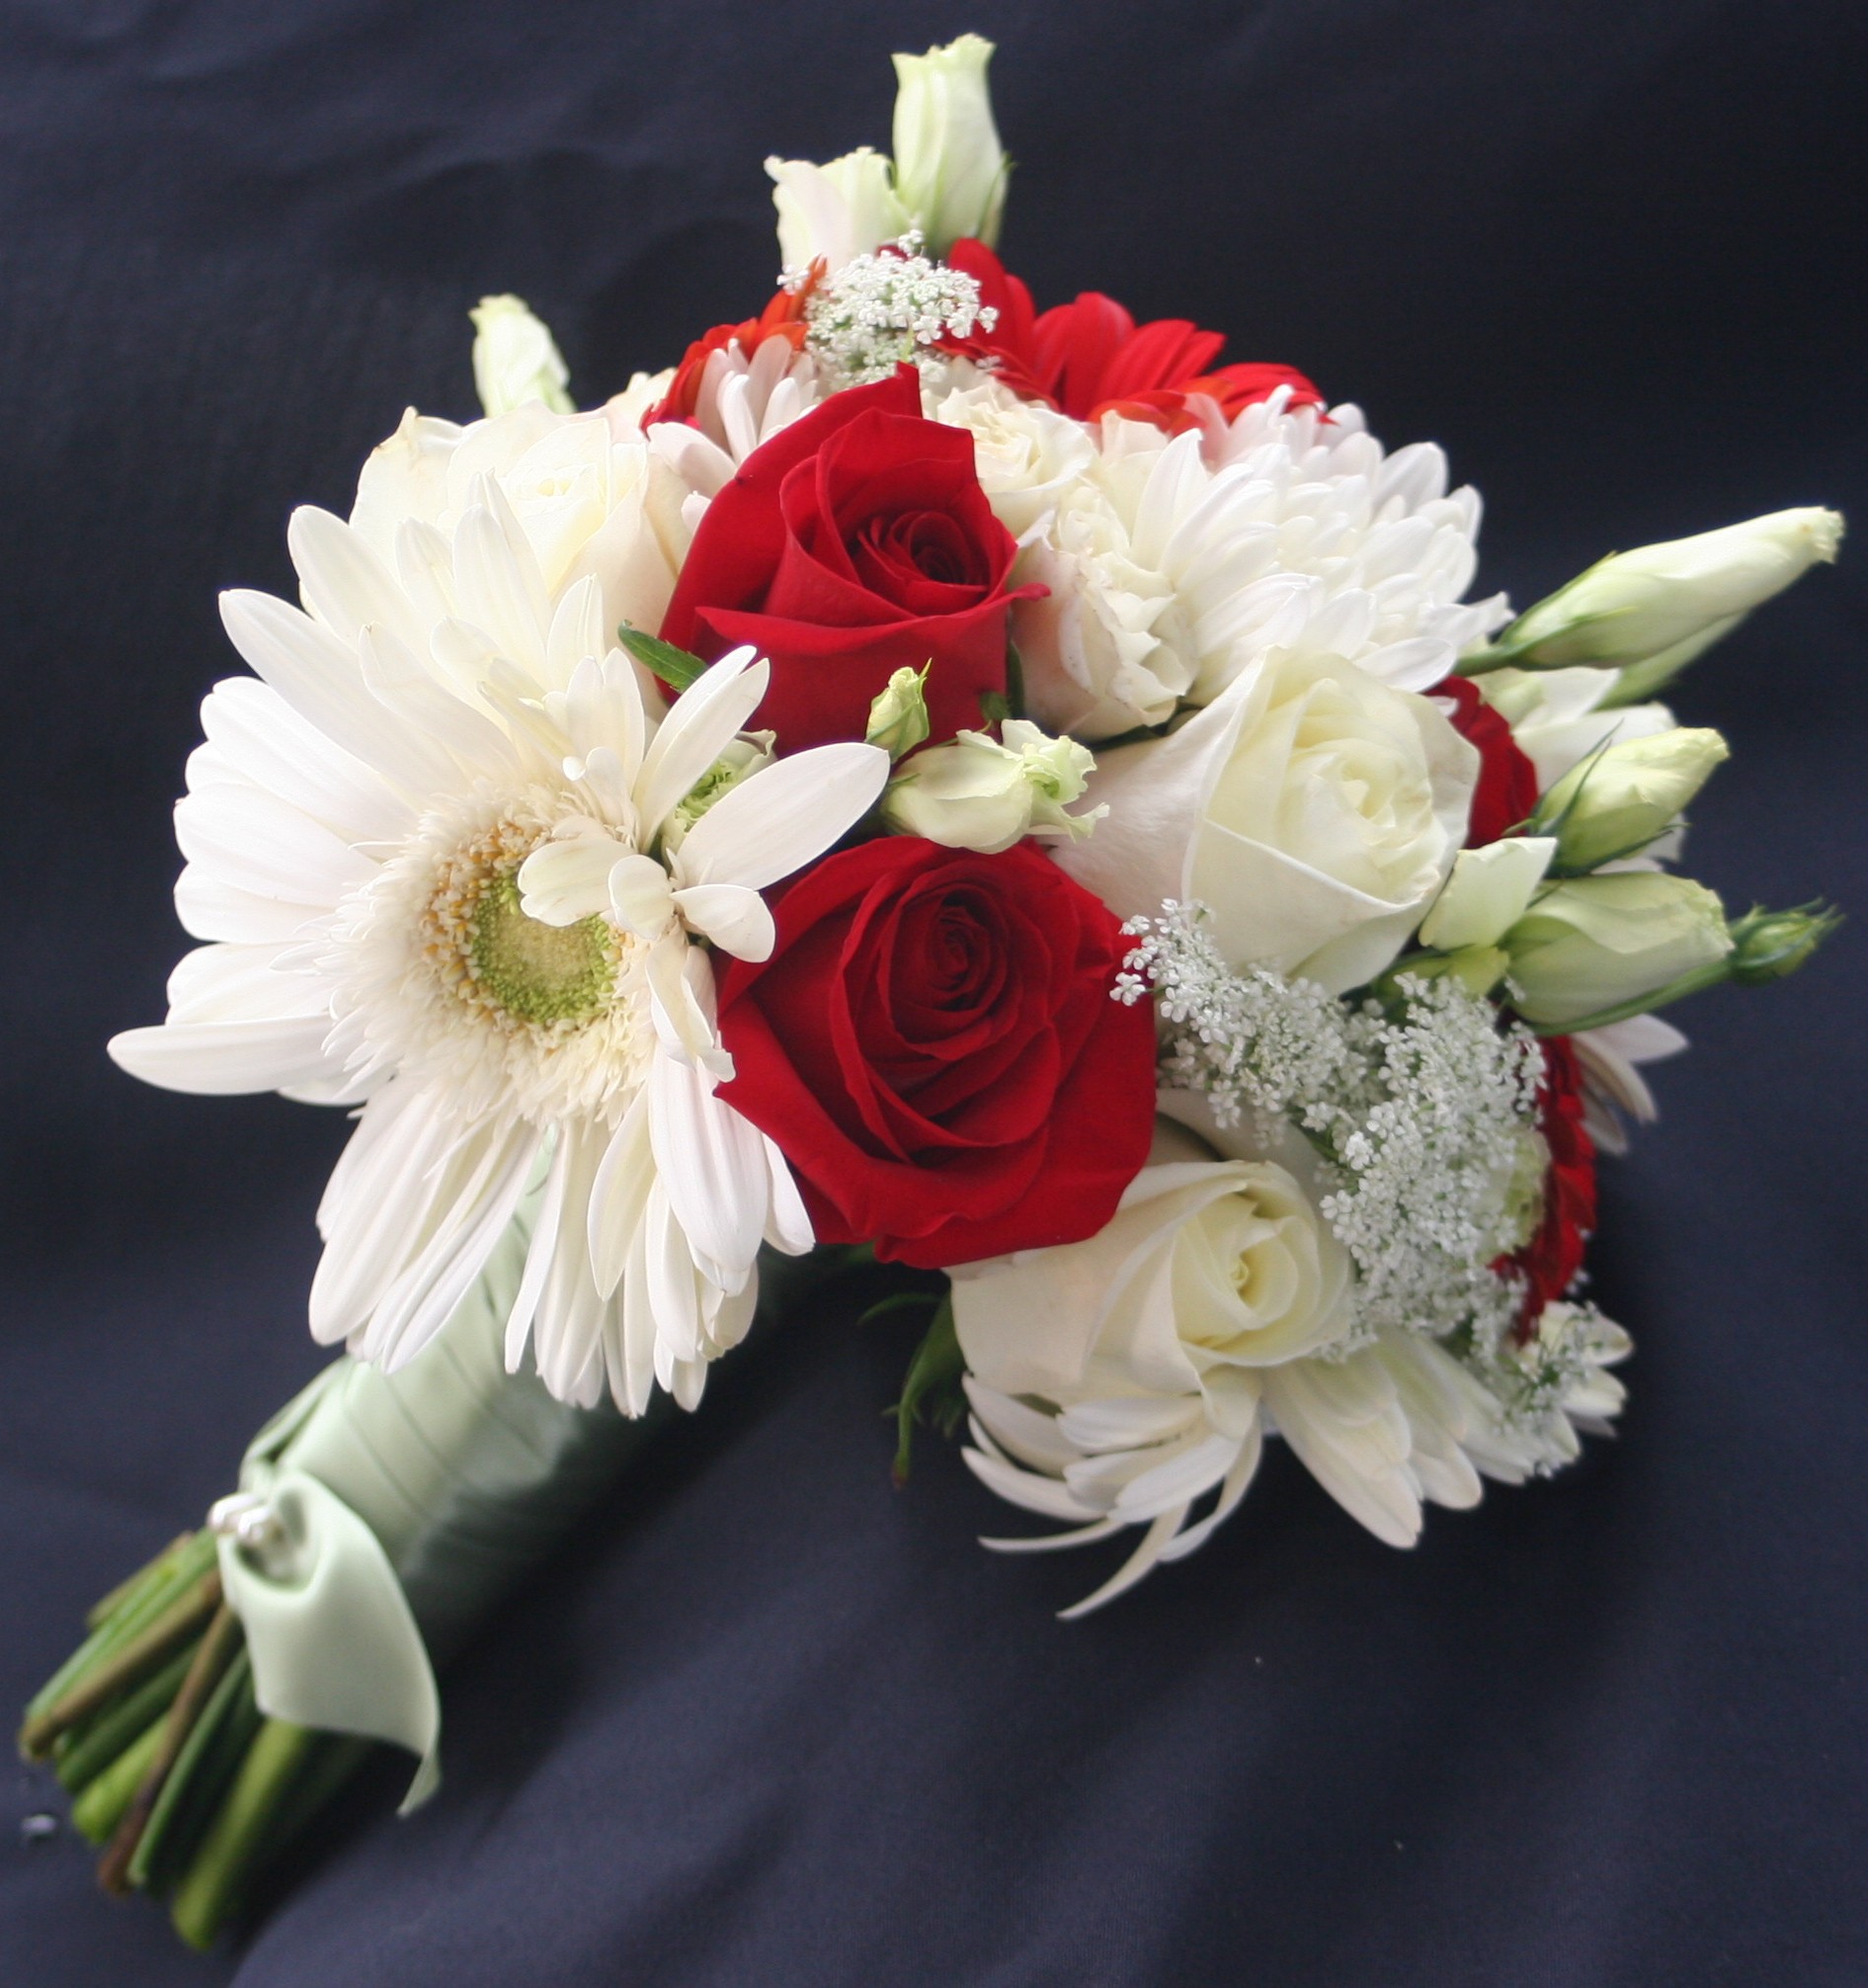 ورد أحمر وابيض حب رومانسي Red And White Wedding Flowers صور ورد